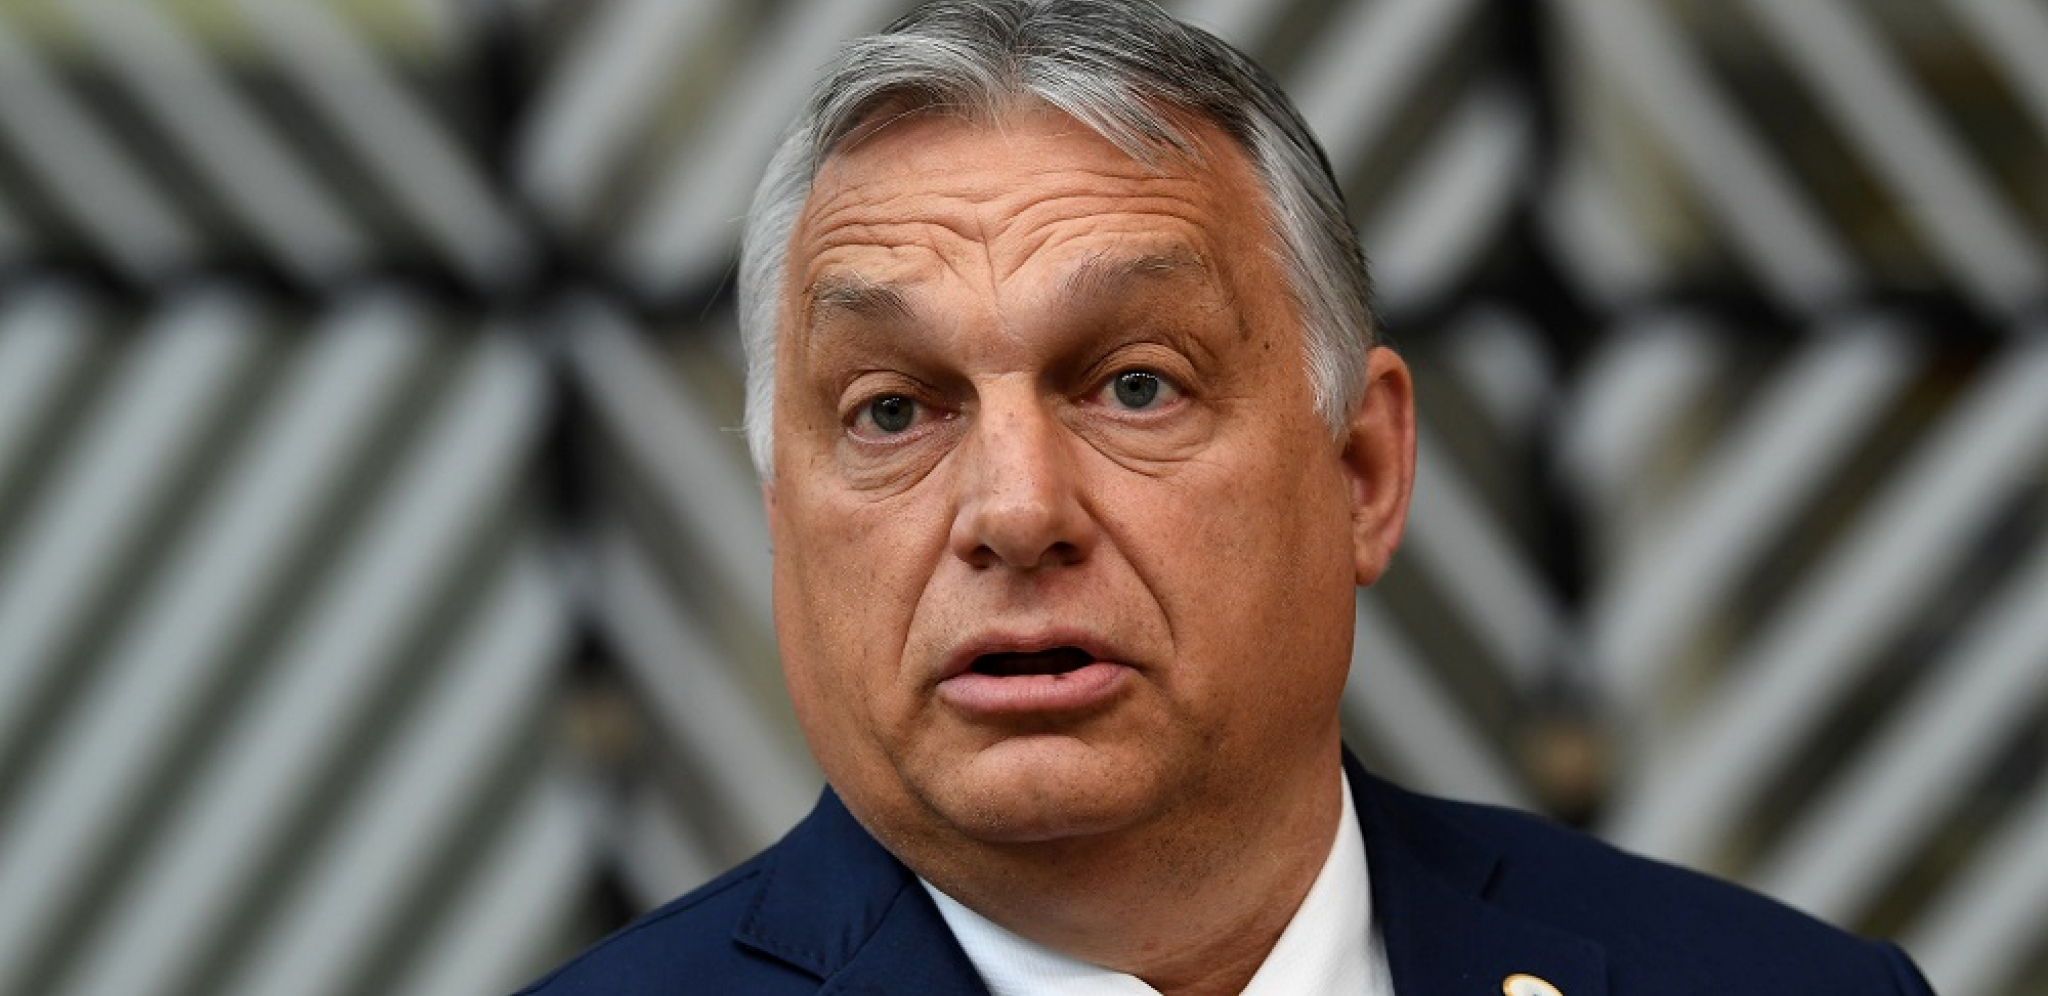 VIKTOR ORBAN SKIDA SANKCIJE?! Premijer Mađarske preti Briselu blokadom